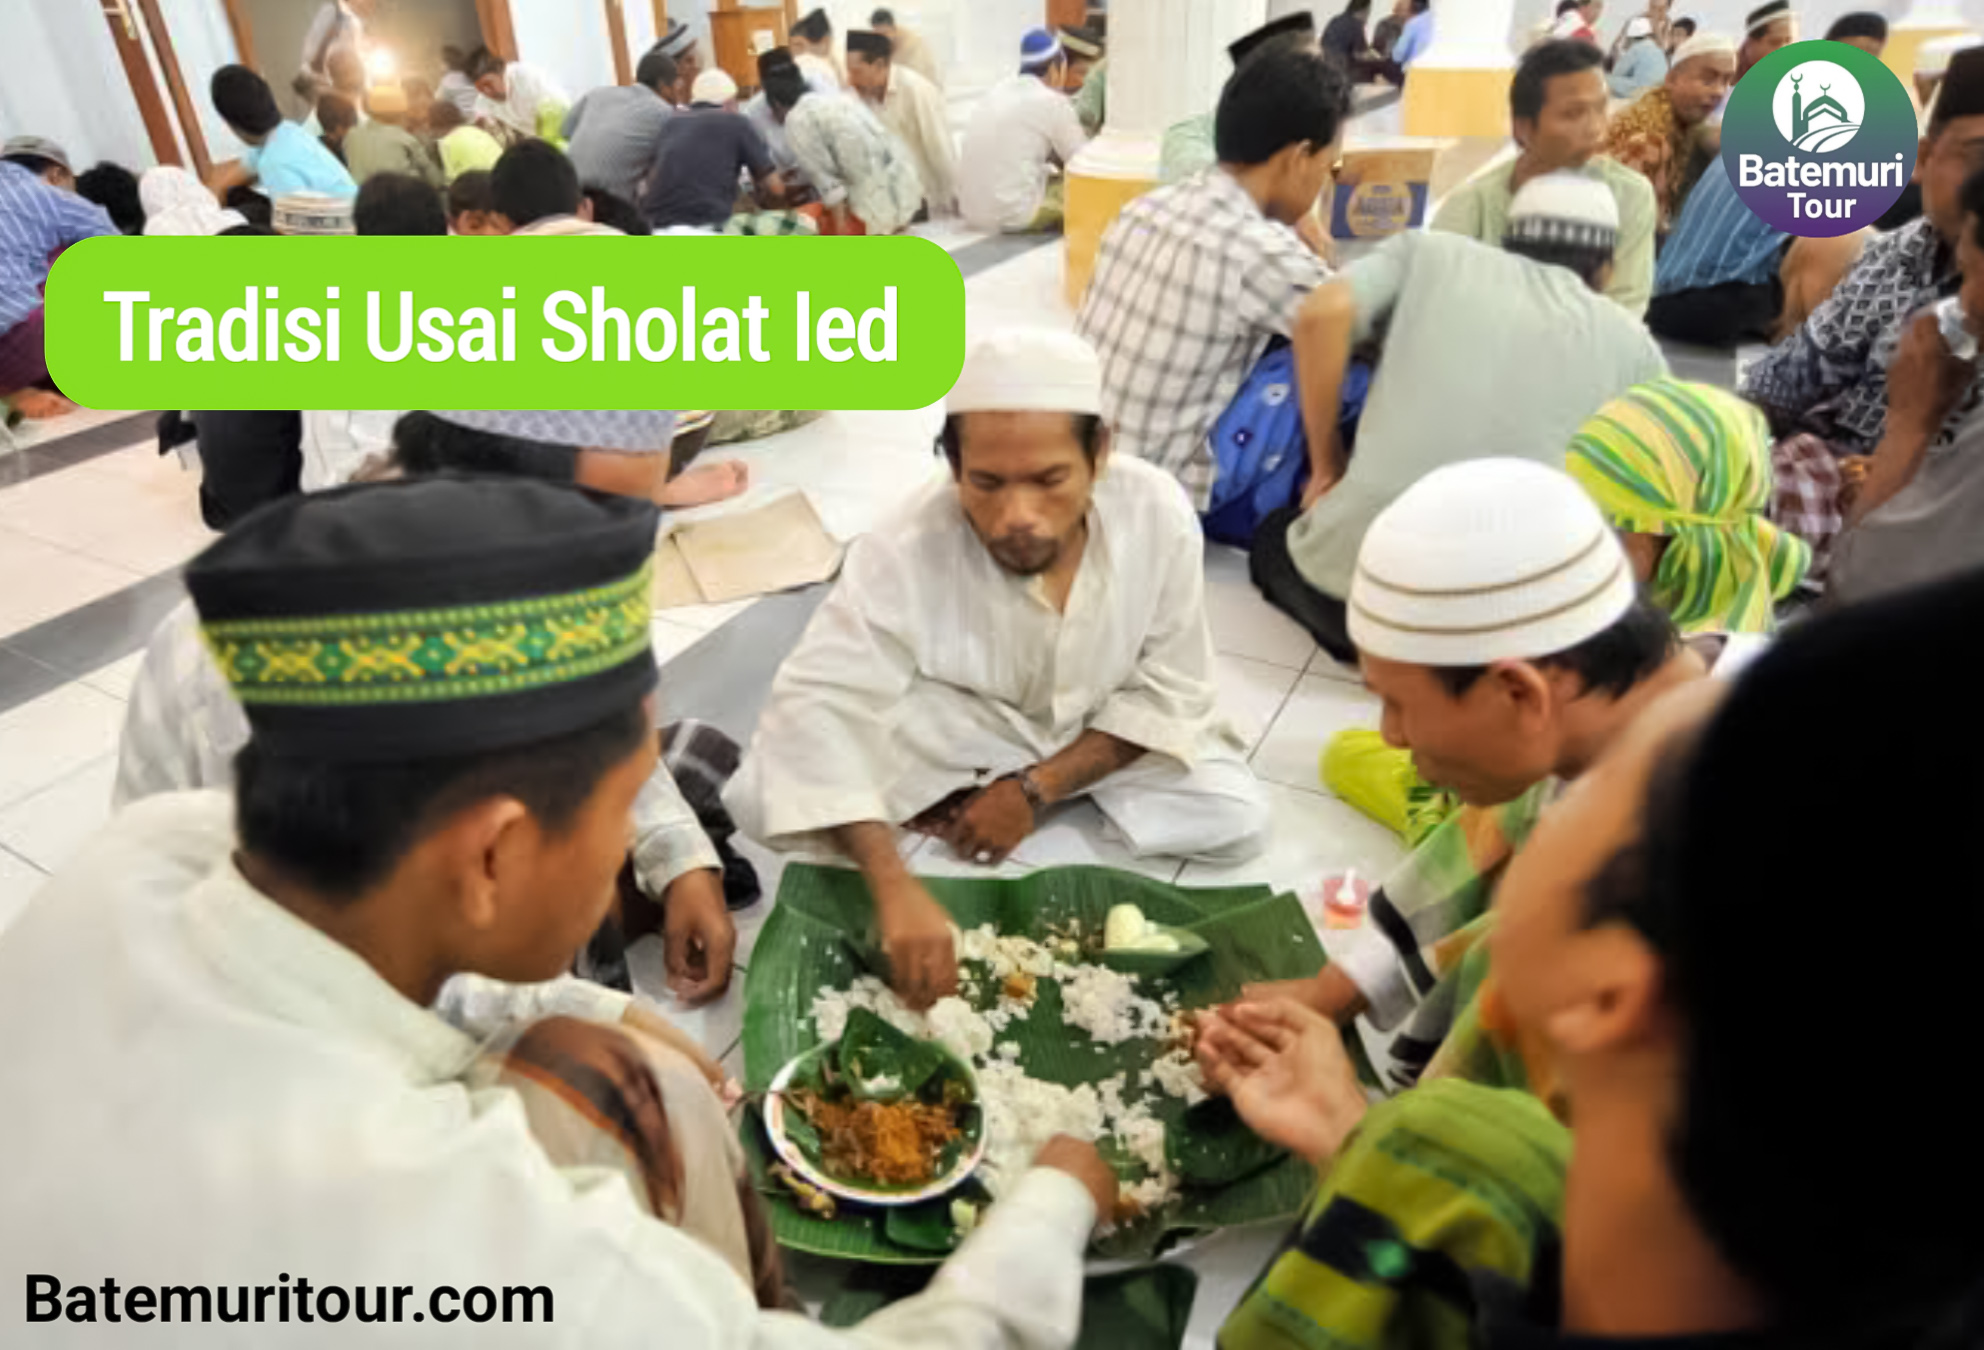 Tradisi Usai Shalat Ied, Makan Bersama di Mushola